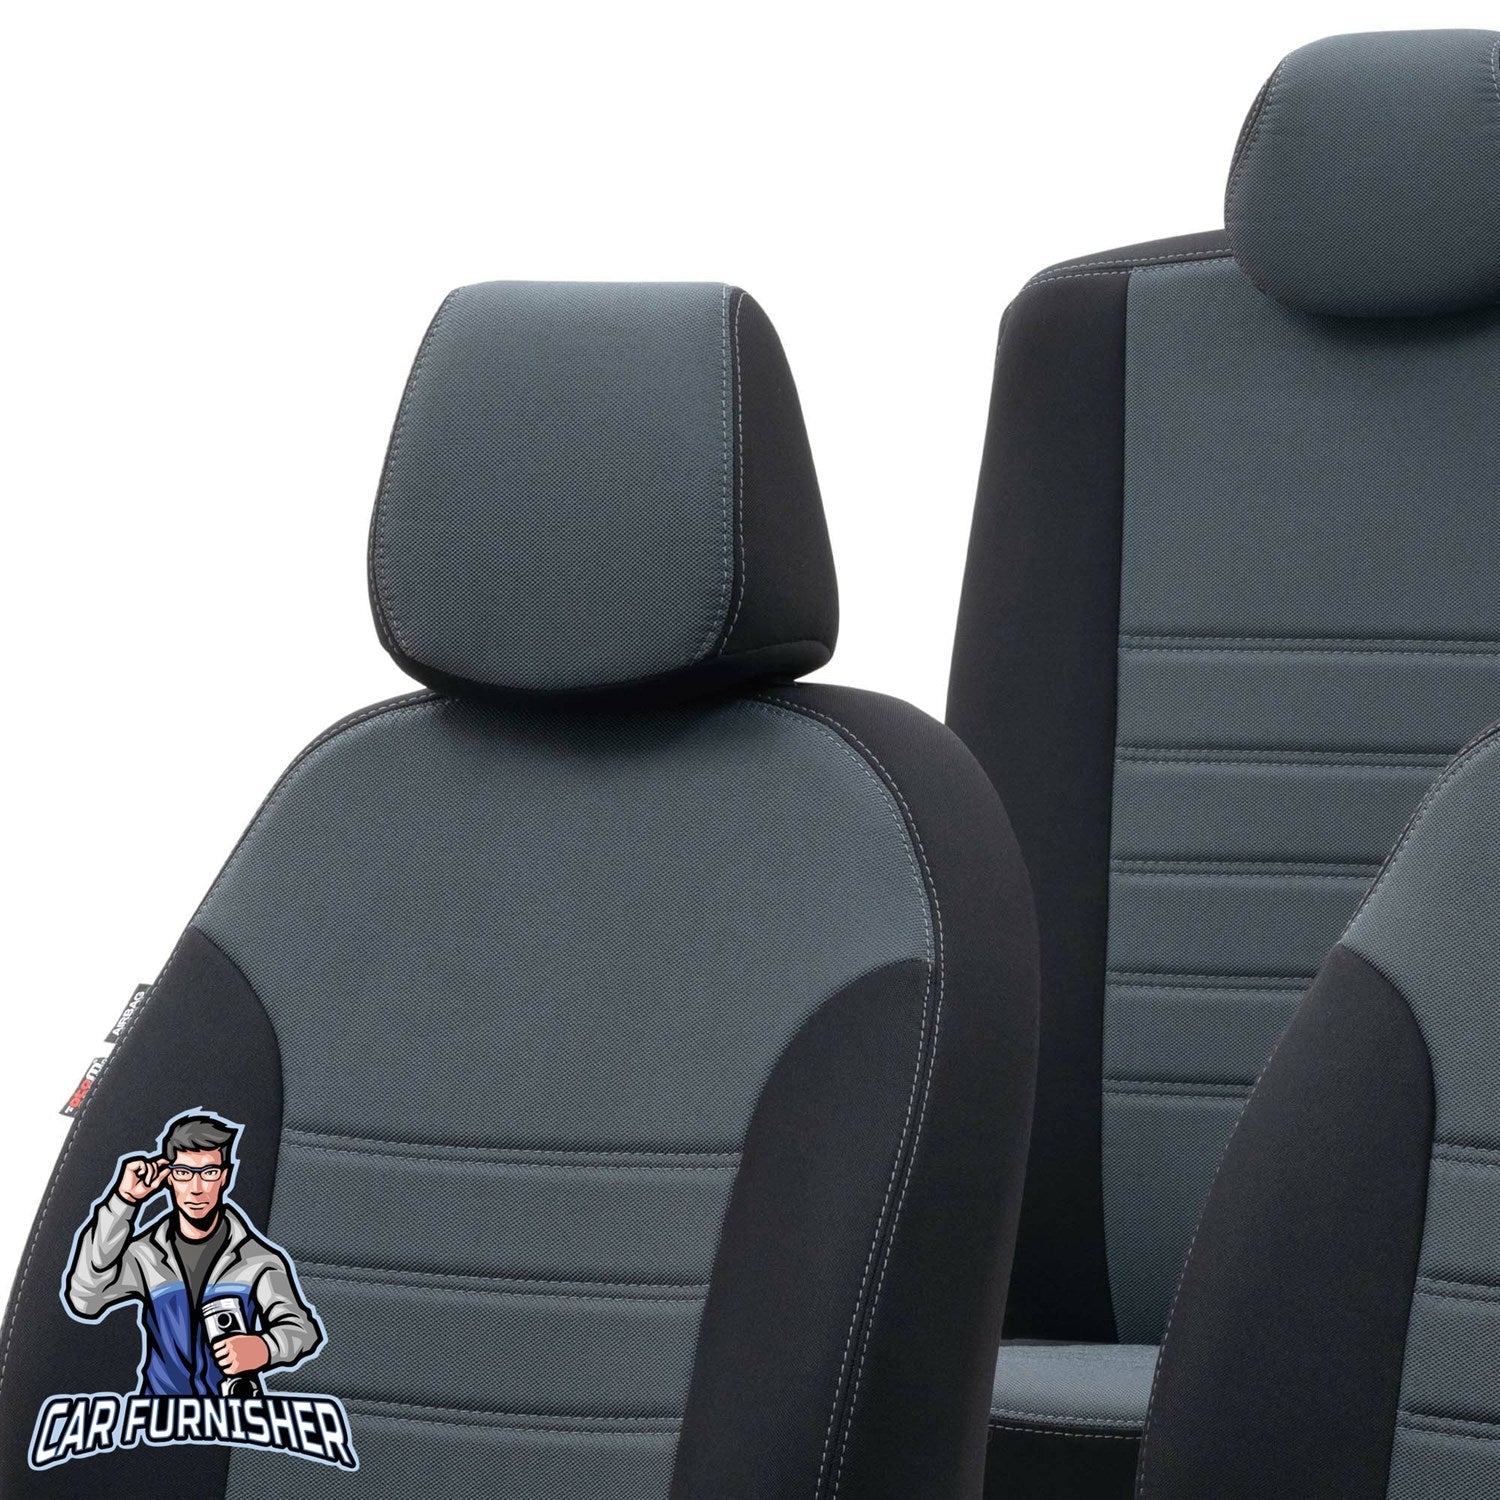 Kia Rio Seat Covers Original Jacquard Design Smoked Black Jacquard Fabric